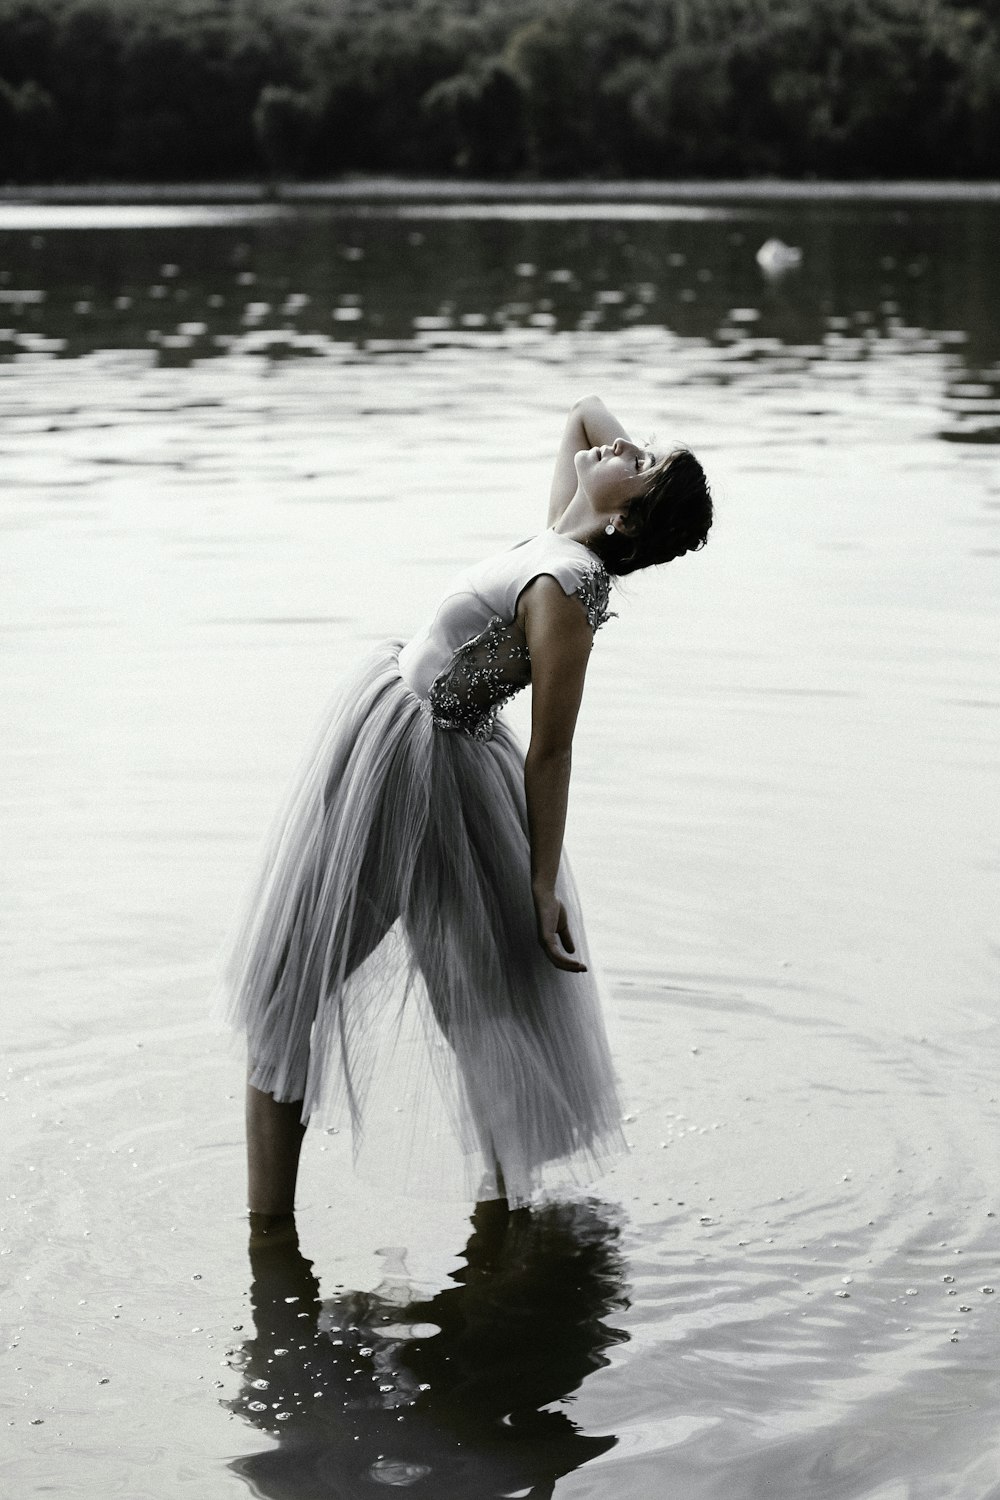 얕은 물 위에 서 있는 회색 드레스를 입은 여자